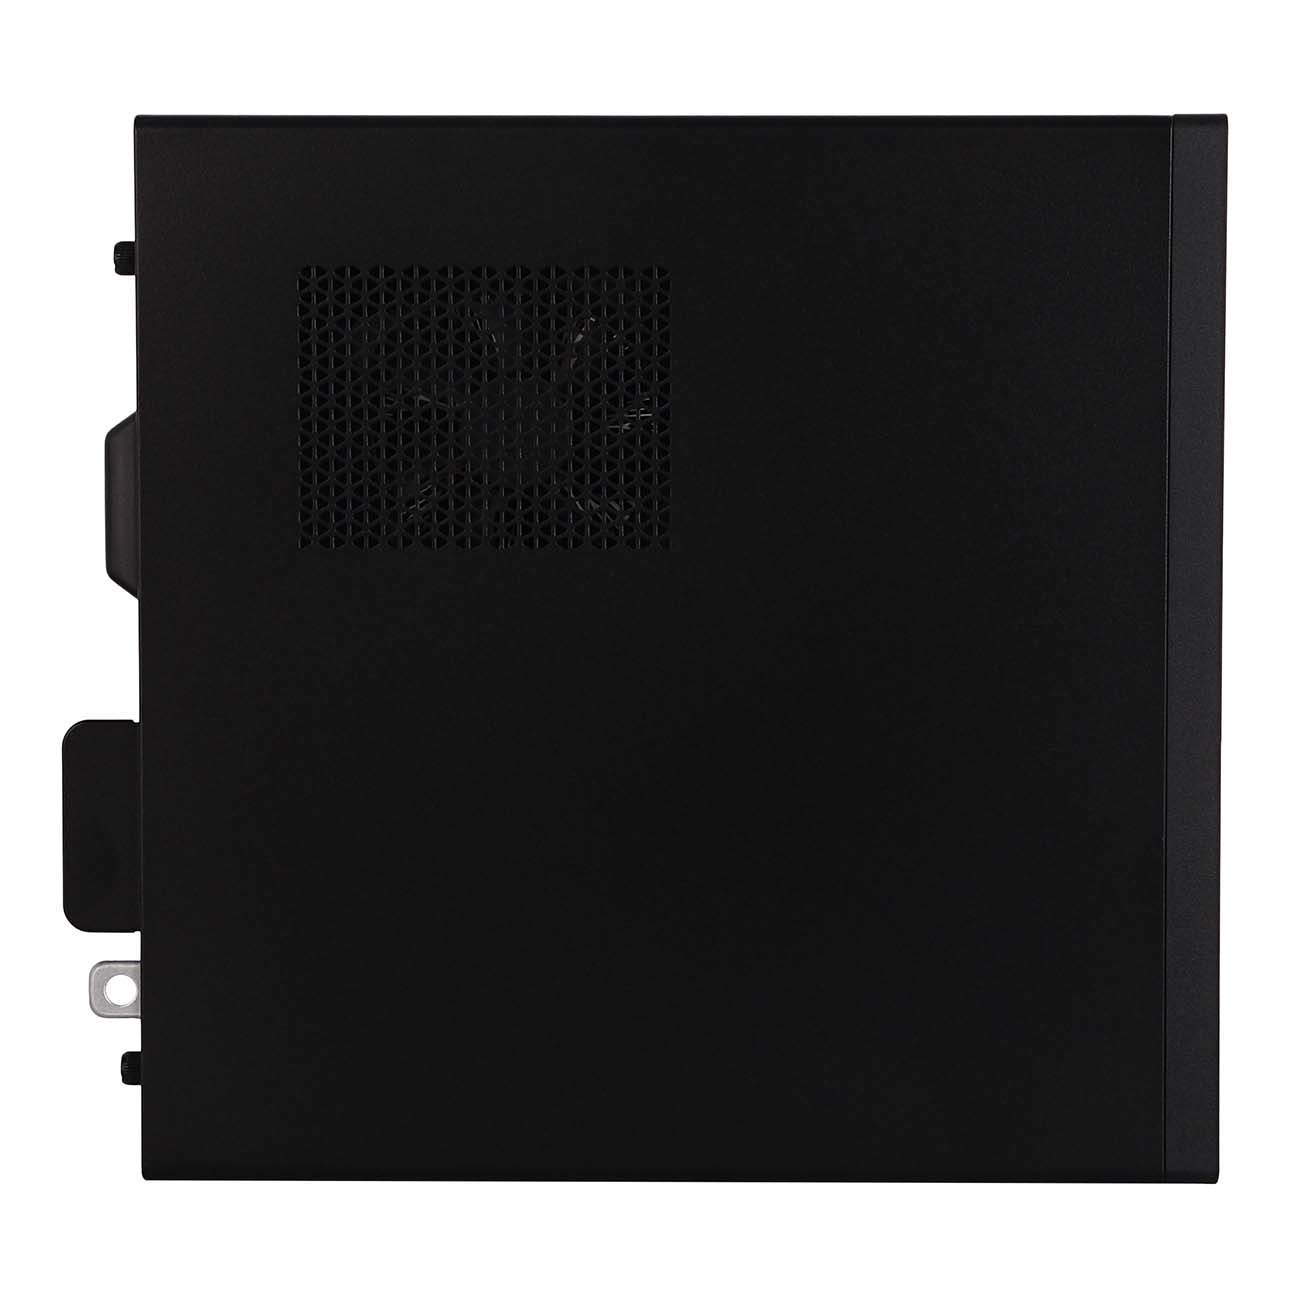 Системный блок Dell 3681 Black (3681-3340)